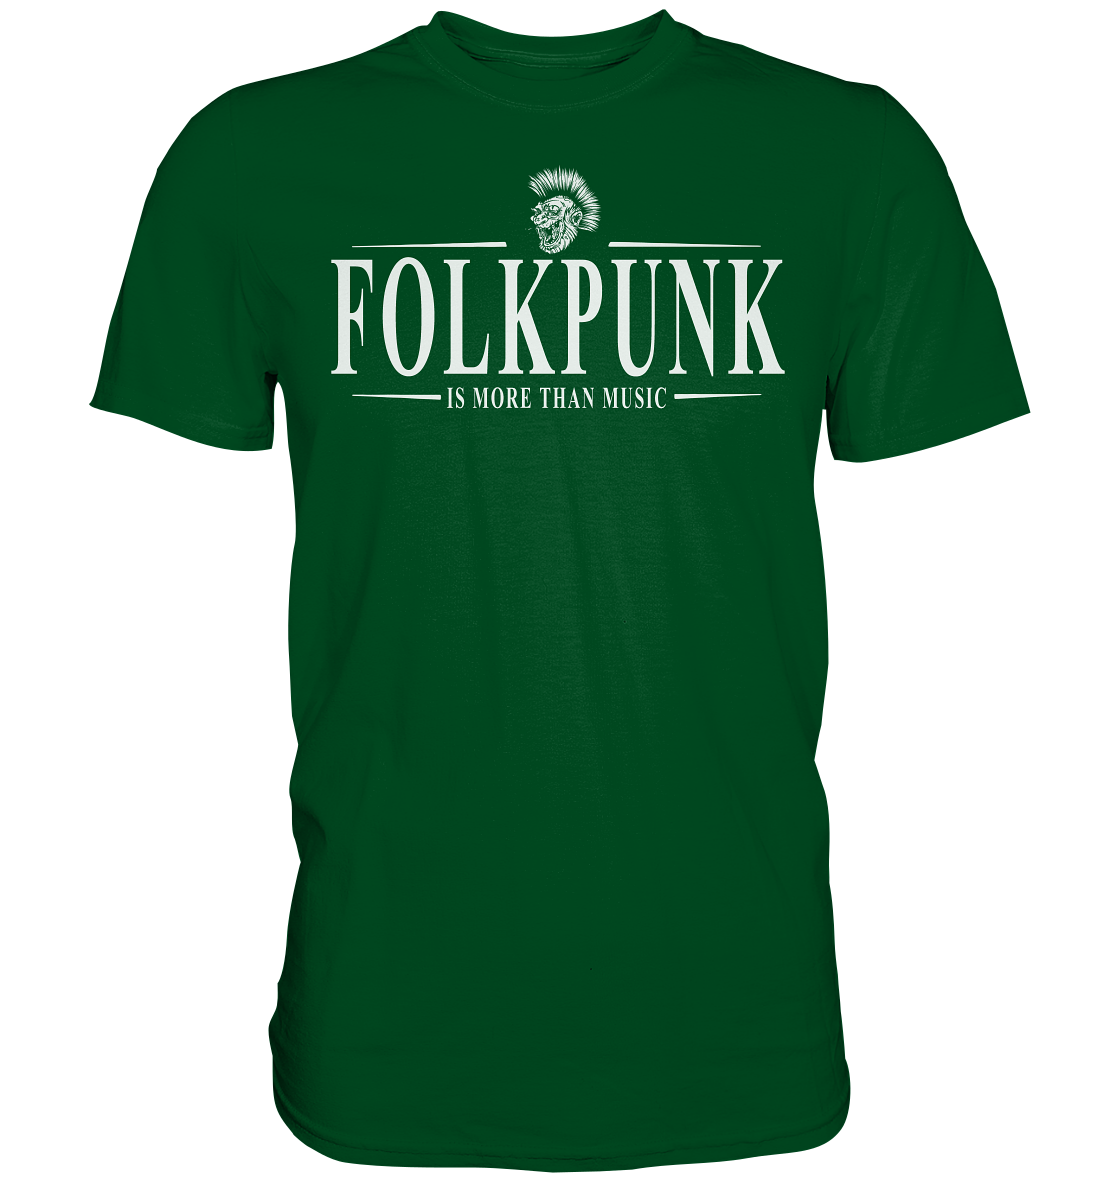 Folkpunk "Is More Than Music" - Premium Shirt